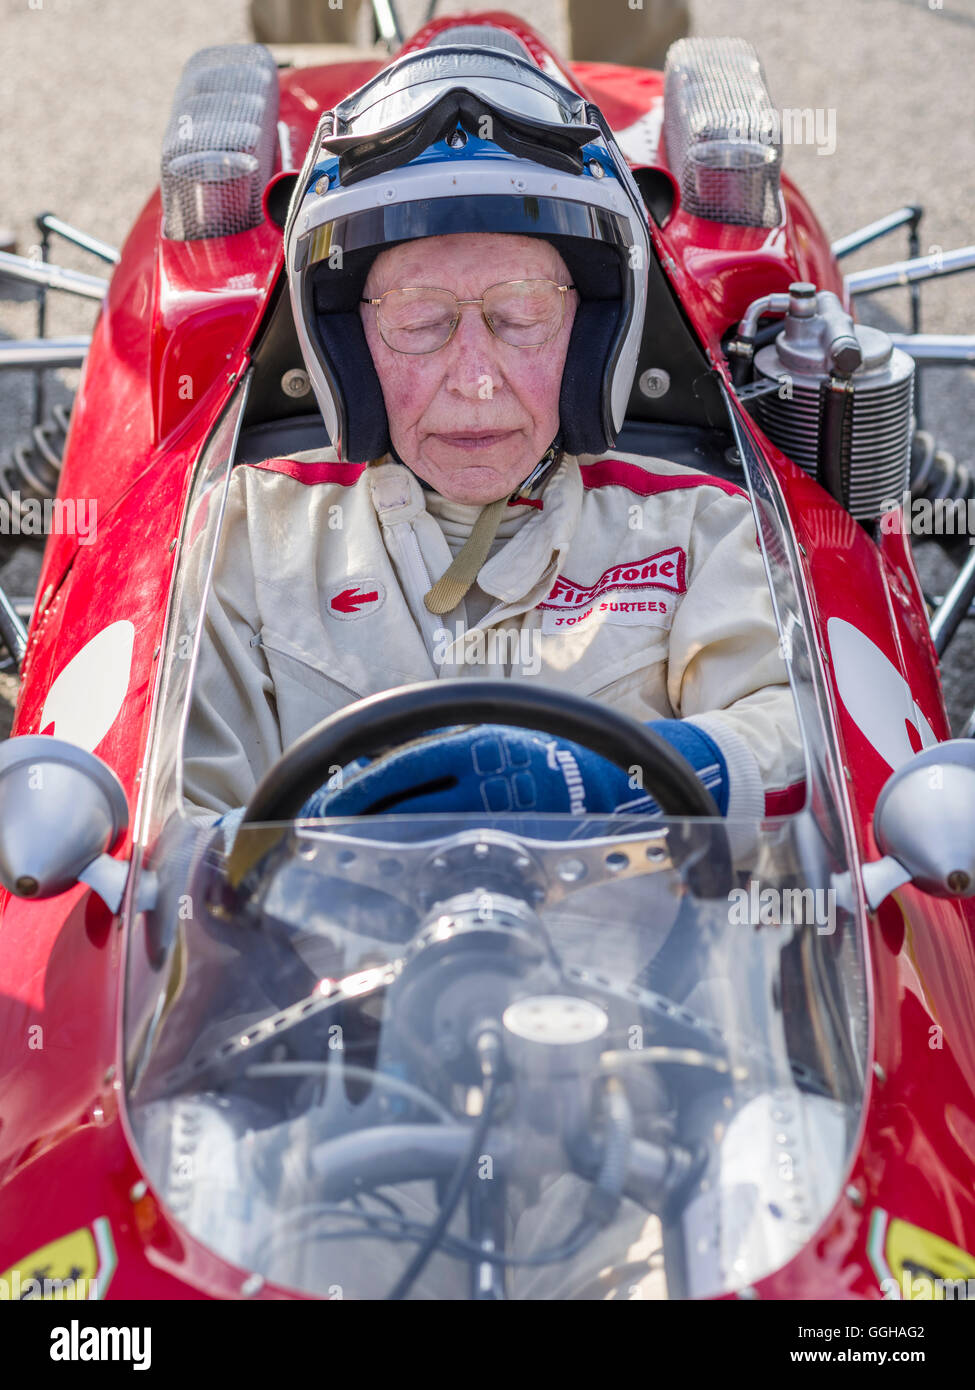 John Surtees im 1964 Ferrari 158, Goodwood Revival 2014, Rennsport, Oldtimer, Goodwood, Chichester, Sussex, England, Gre Stockfoto